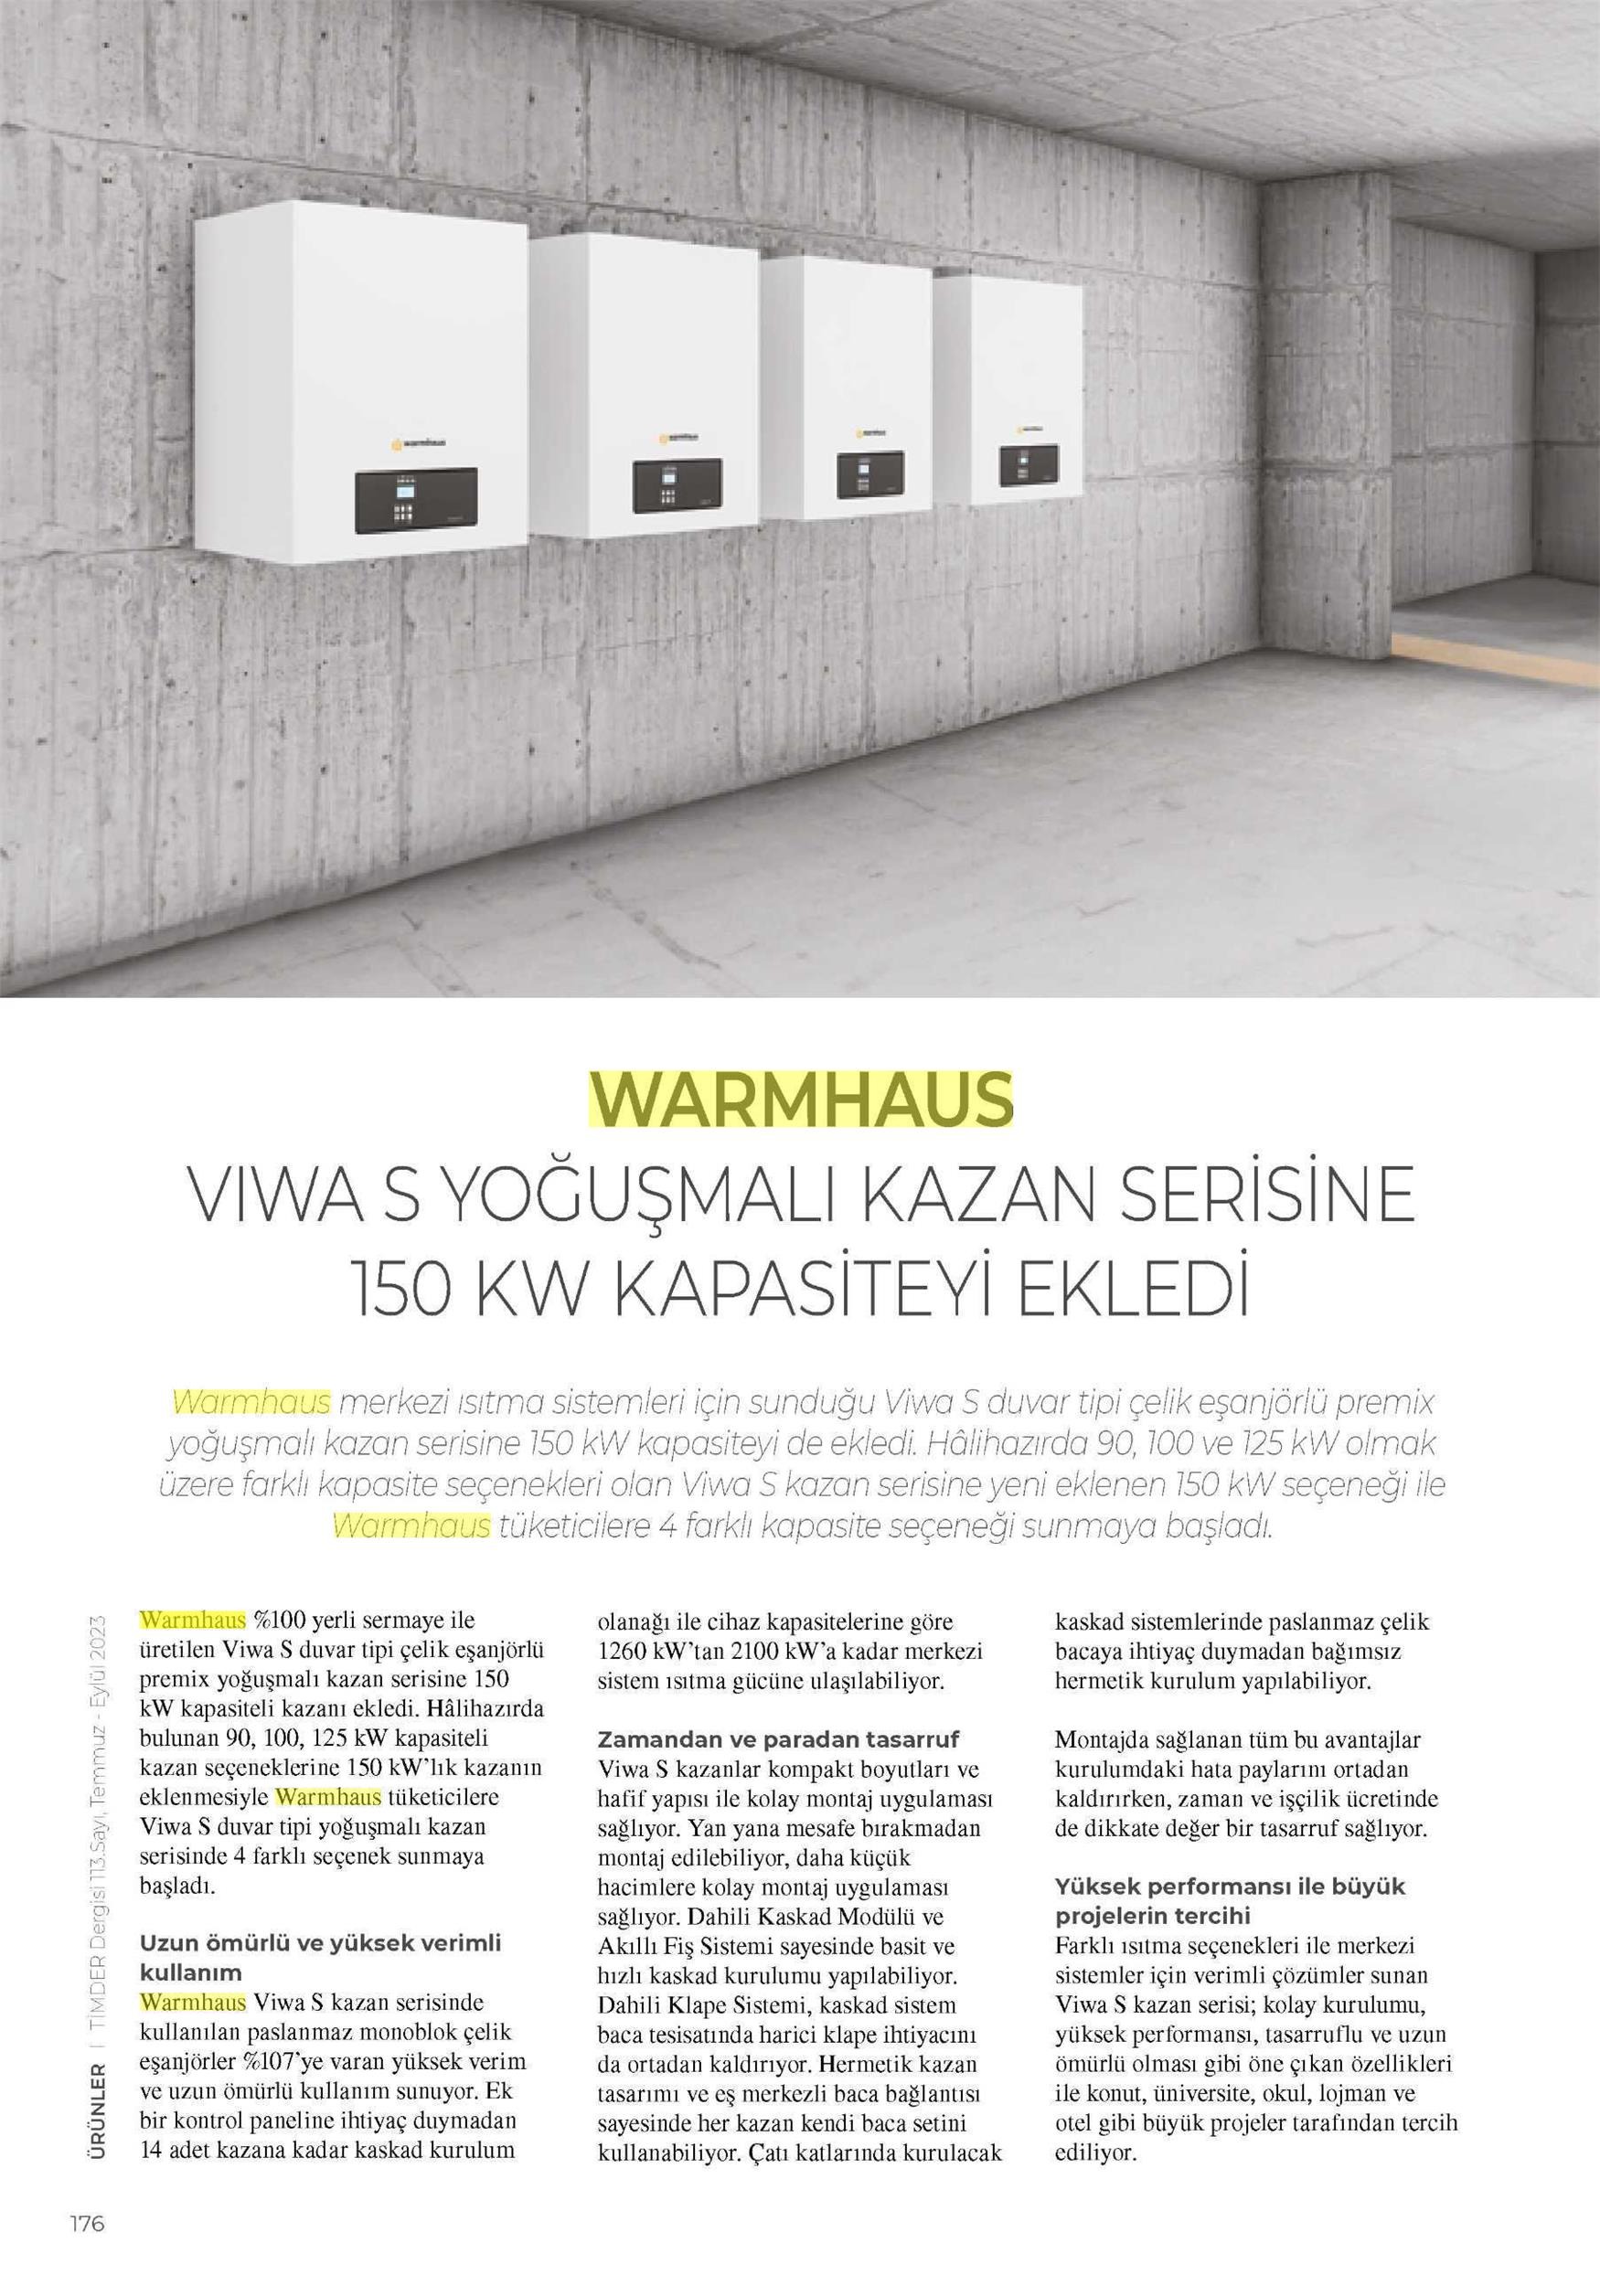 Warmhaus Viwa S Yoğuşmalı Kazan Serisine 150 KW Kapasiteyi Ekledi